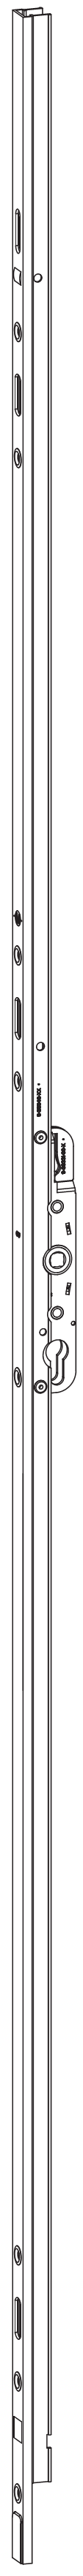 GU-ITALIA -  Cremonese HS 934 - 937 per alzante scorrevole altezza maniglia fissa con chiusura a perni - gr / dim. A PERNI DI CHIUSURA - entrata 37,5 - alt. man. 1000 - lbb/hbb 2090 - 2740